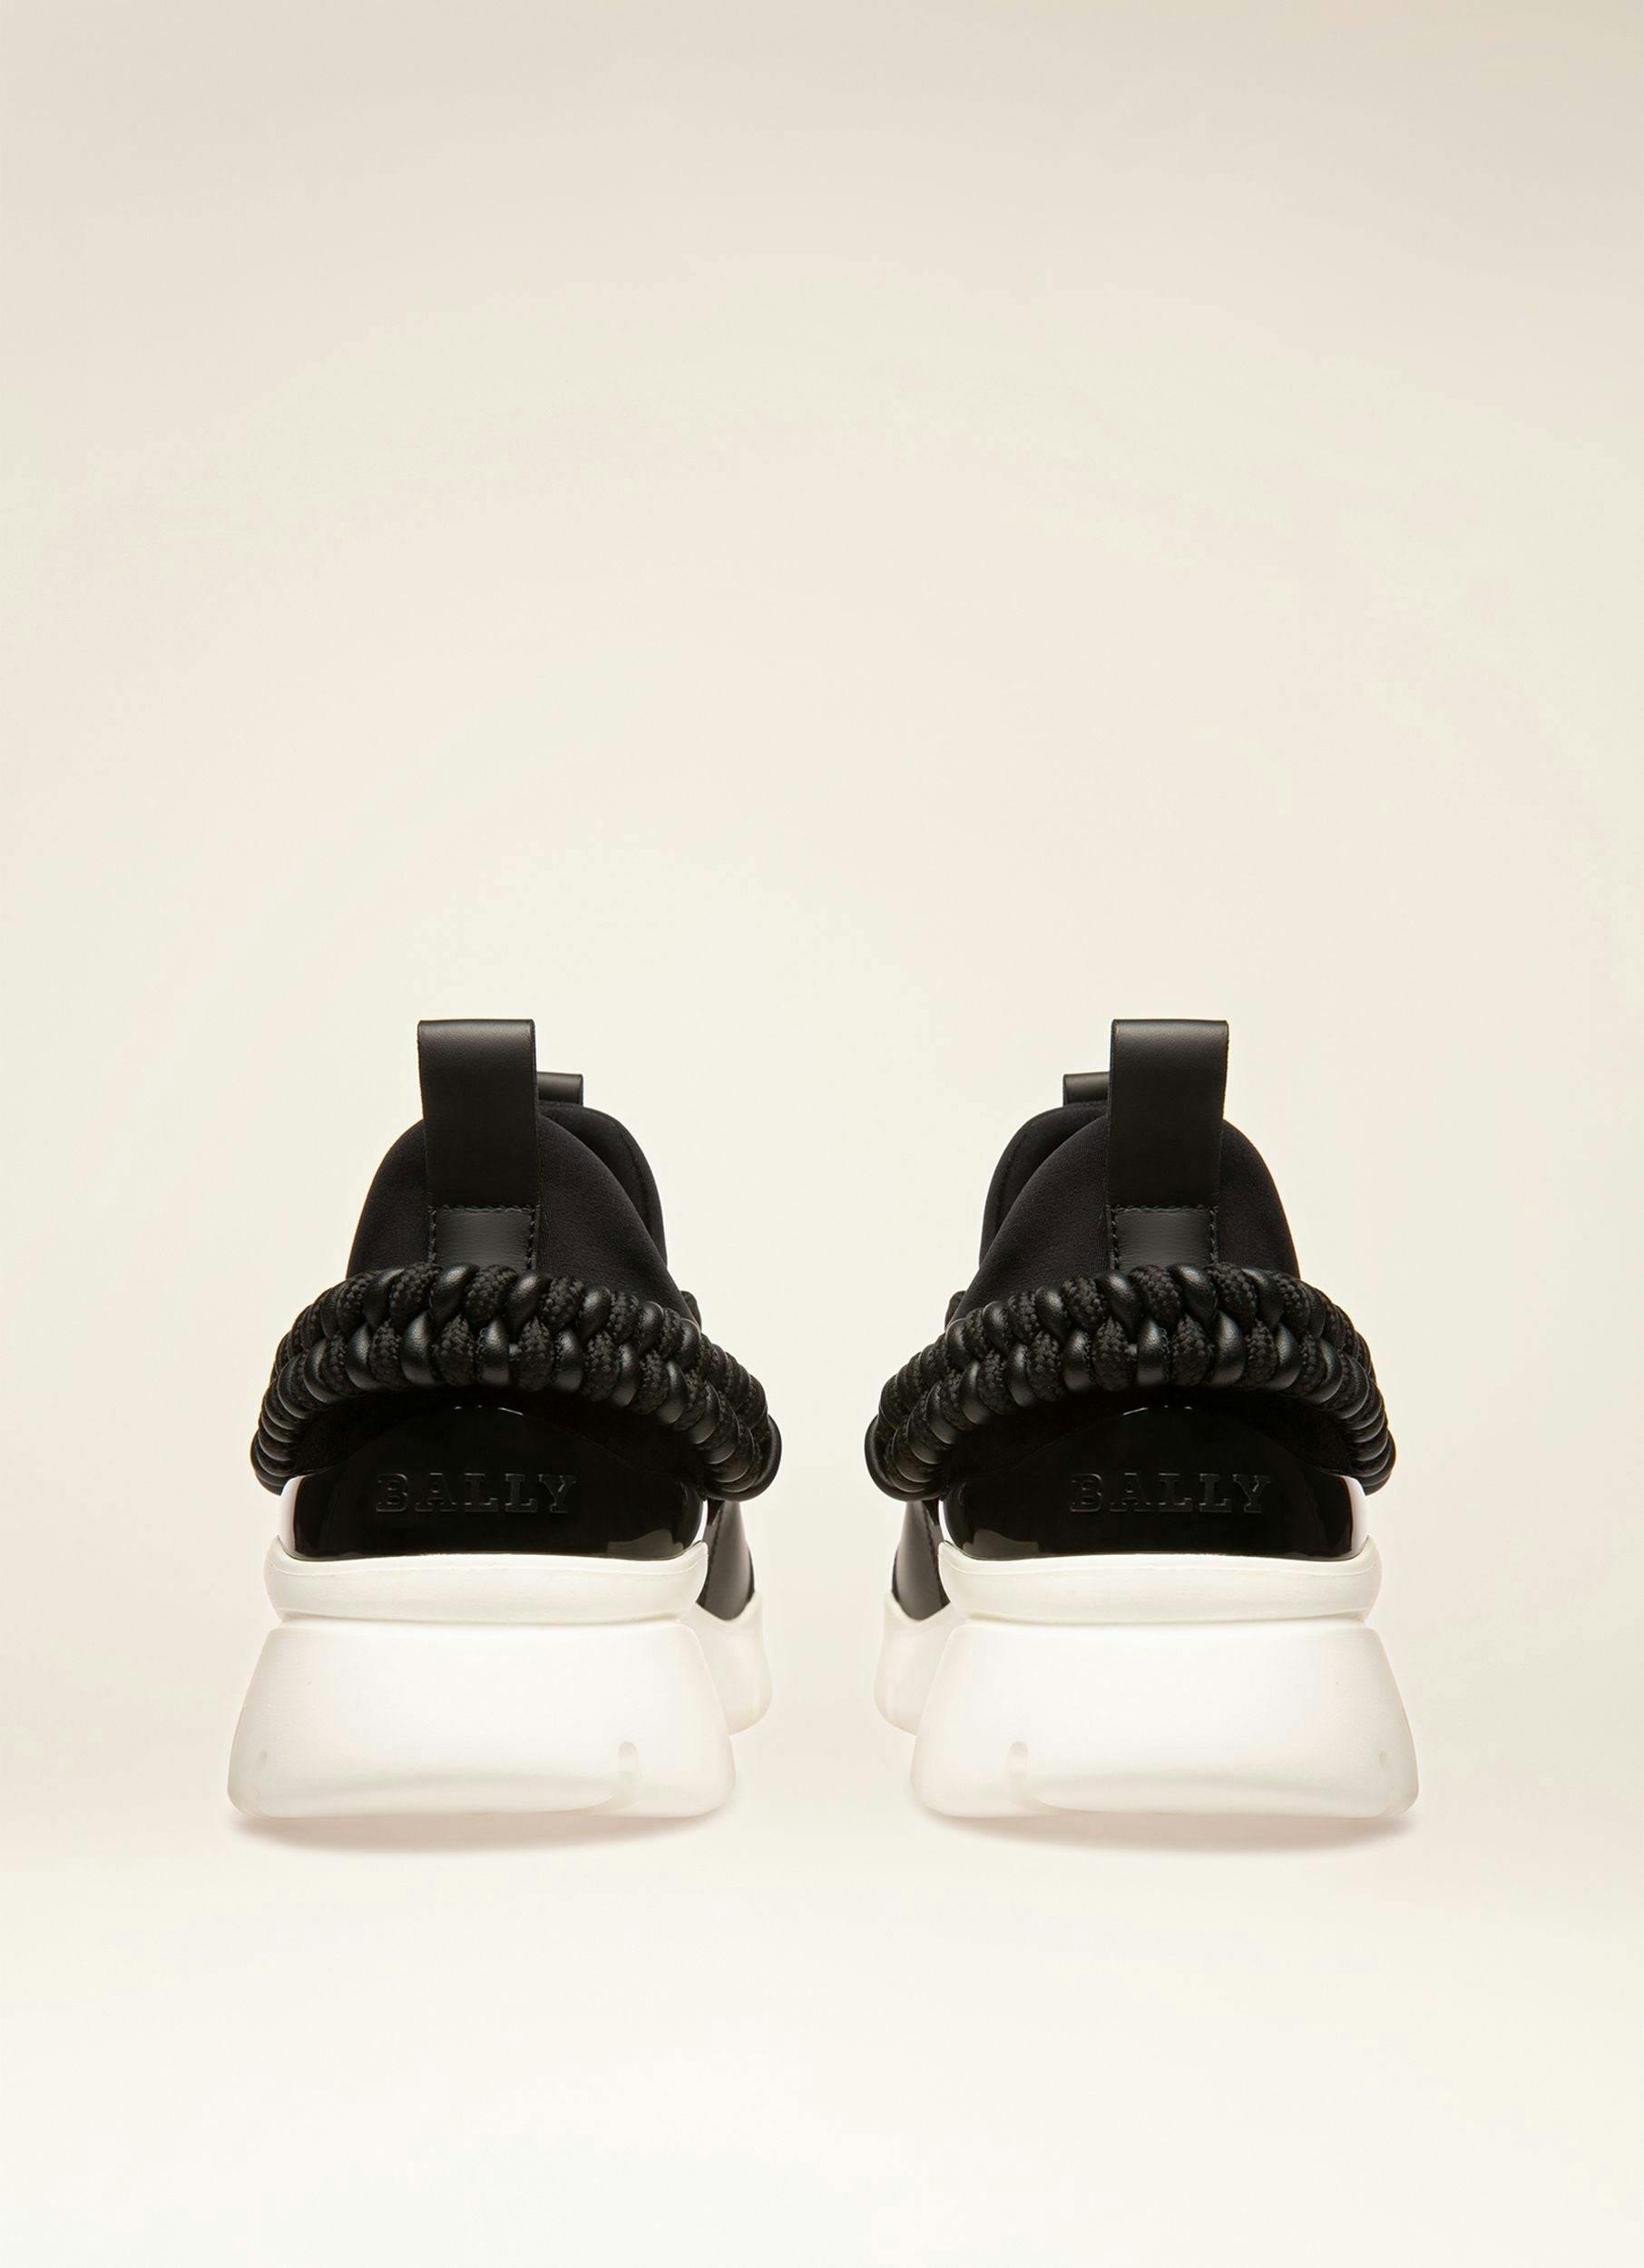 BIENNE Leather Sneakers In Black - Men's - Bally - 02